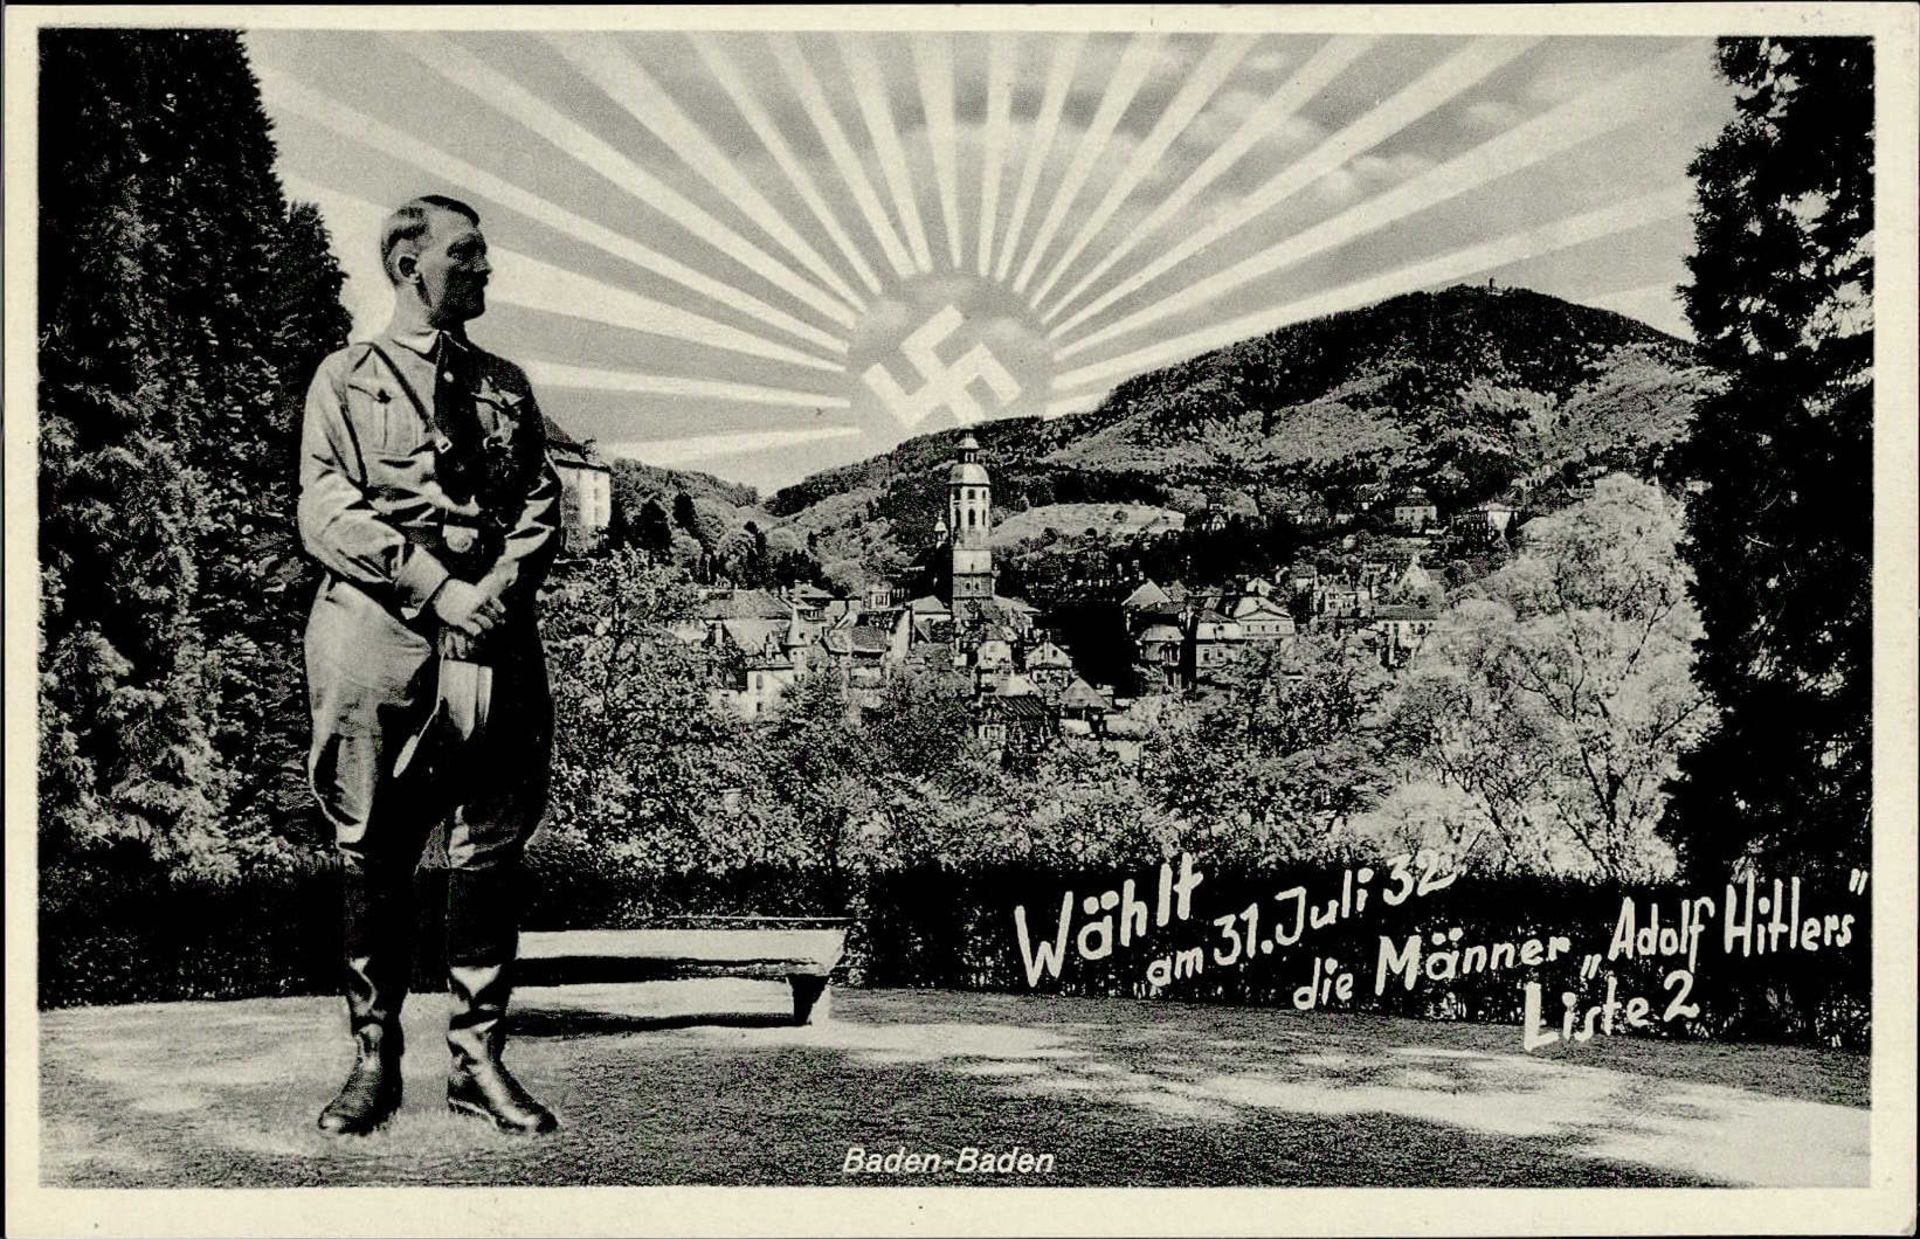 Hitler Baden-Baden 1932 Aufgehende Sonne Wählt am 31.Juli die Männer Adolf Hitlers I-II